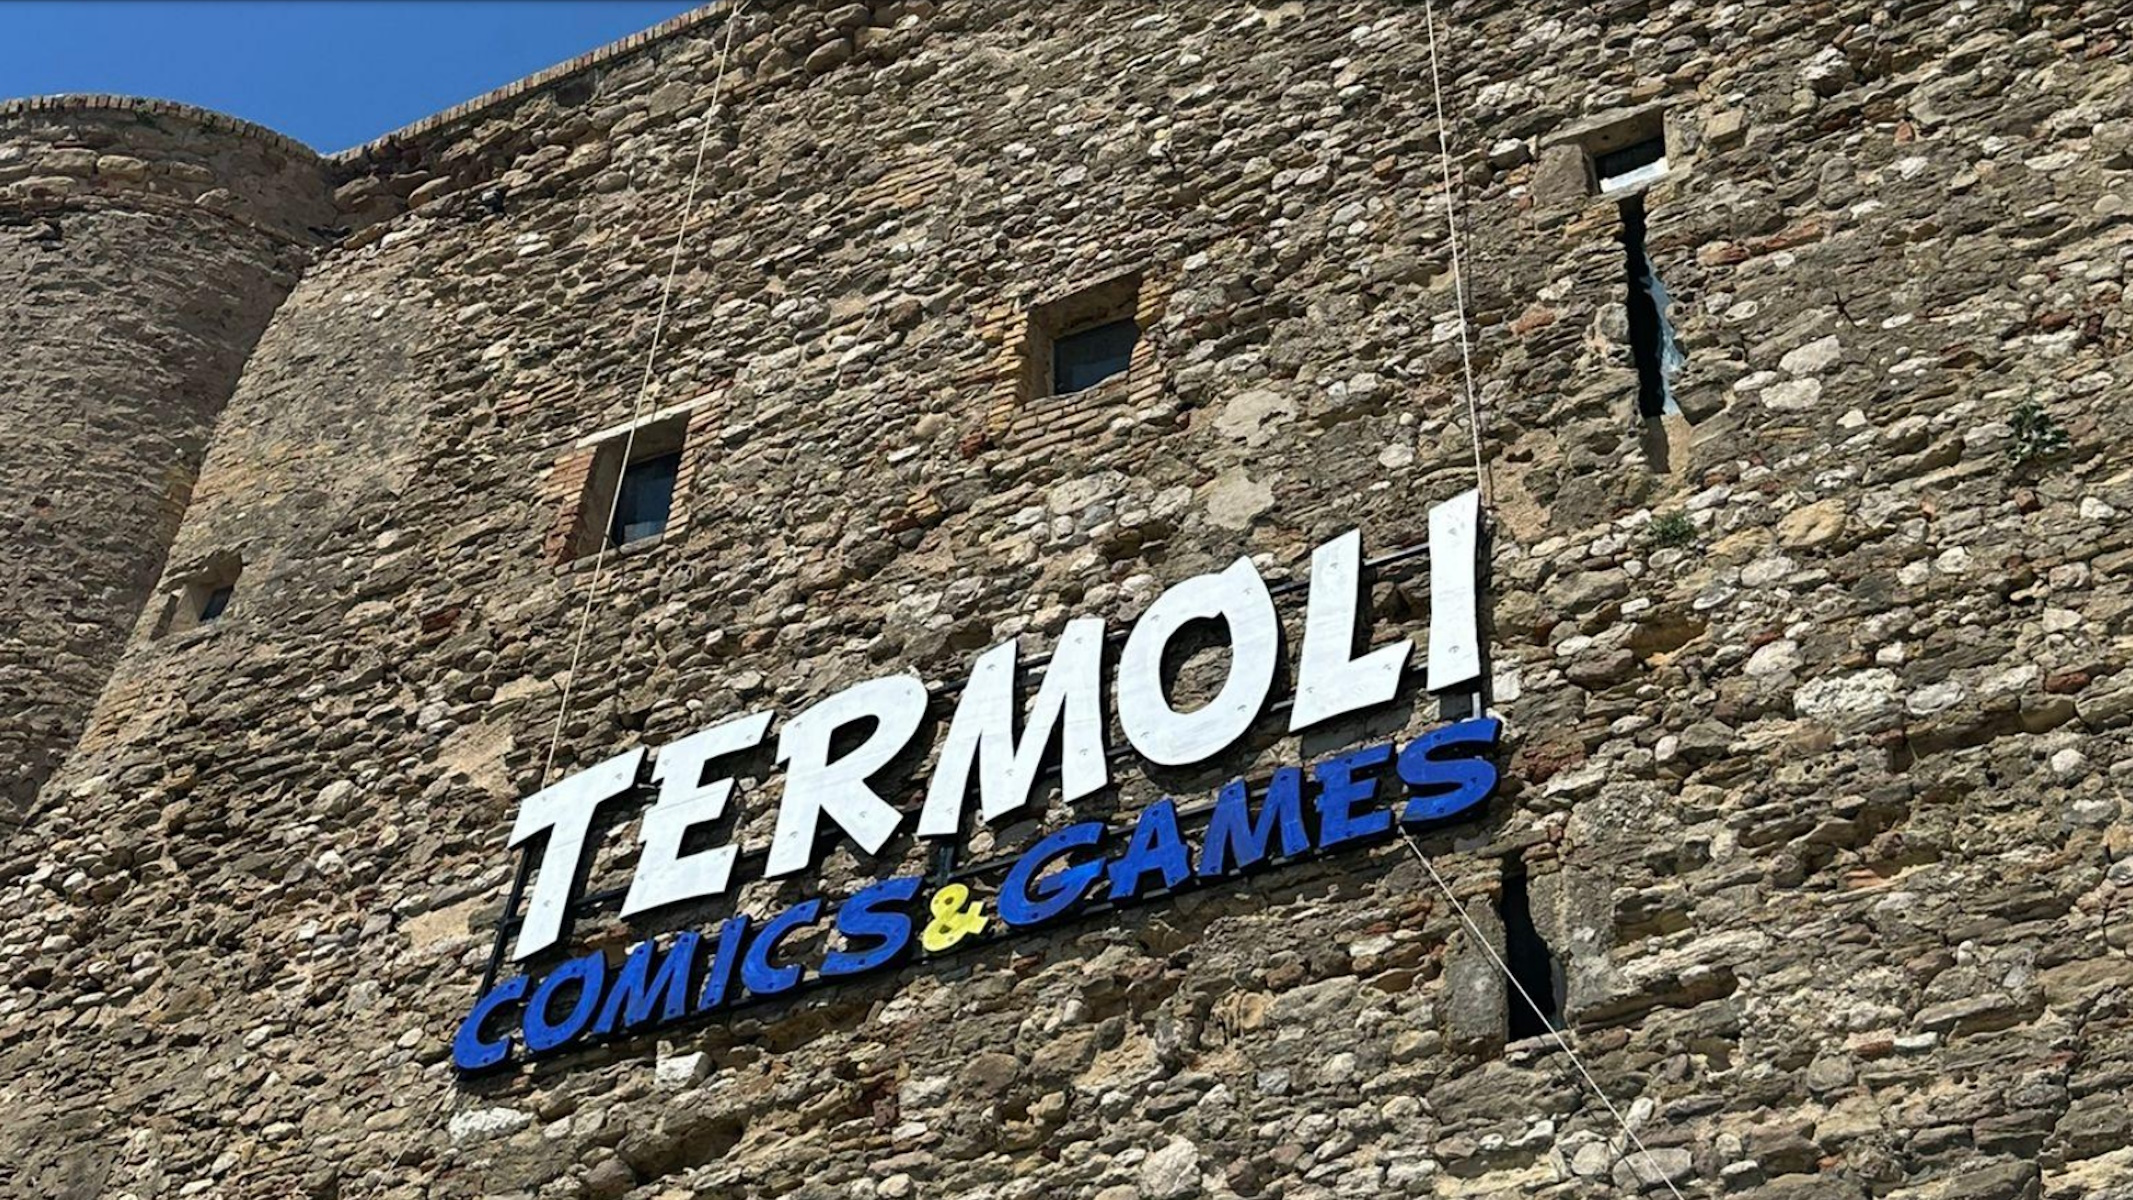 Termoli Comics & Games castello di Termoli